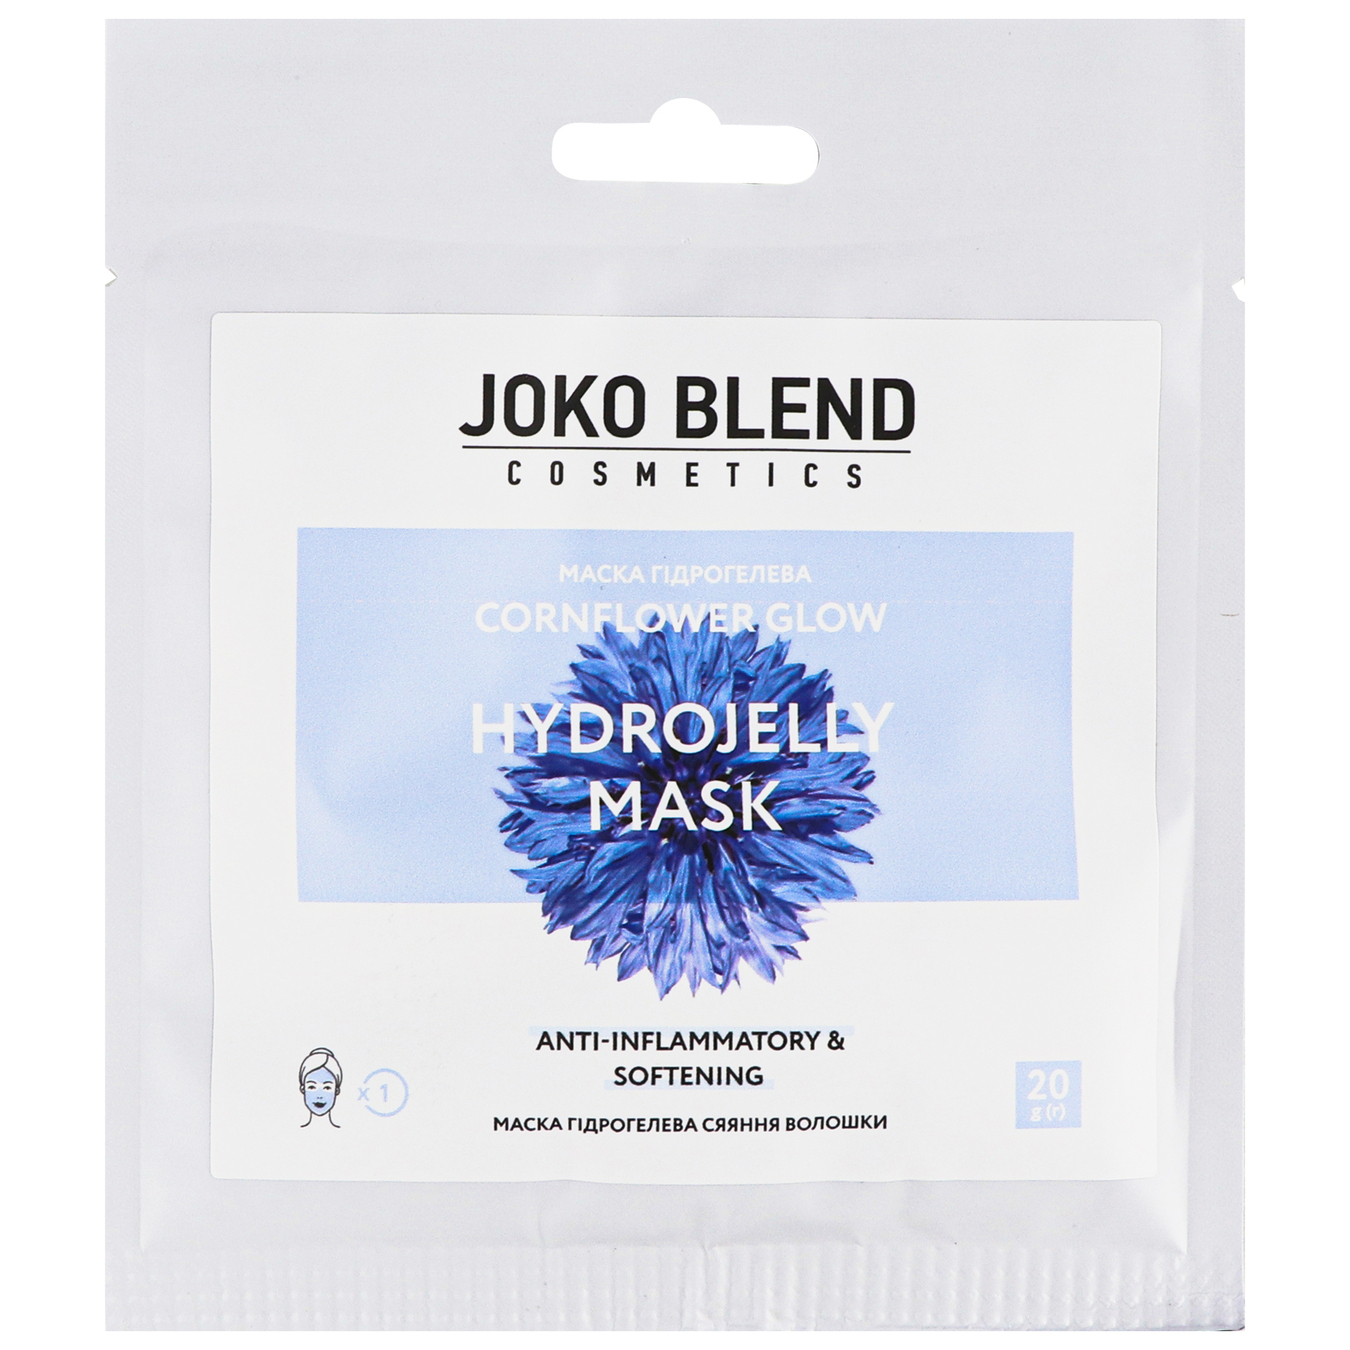 Маска для лица Cornflower Glow Joko Blend гидрогелевая 20г